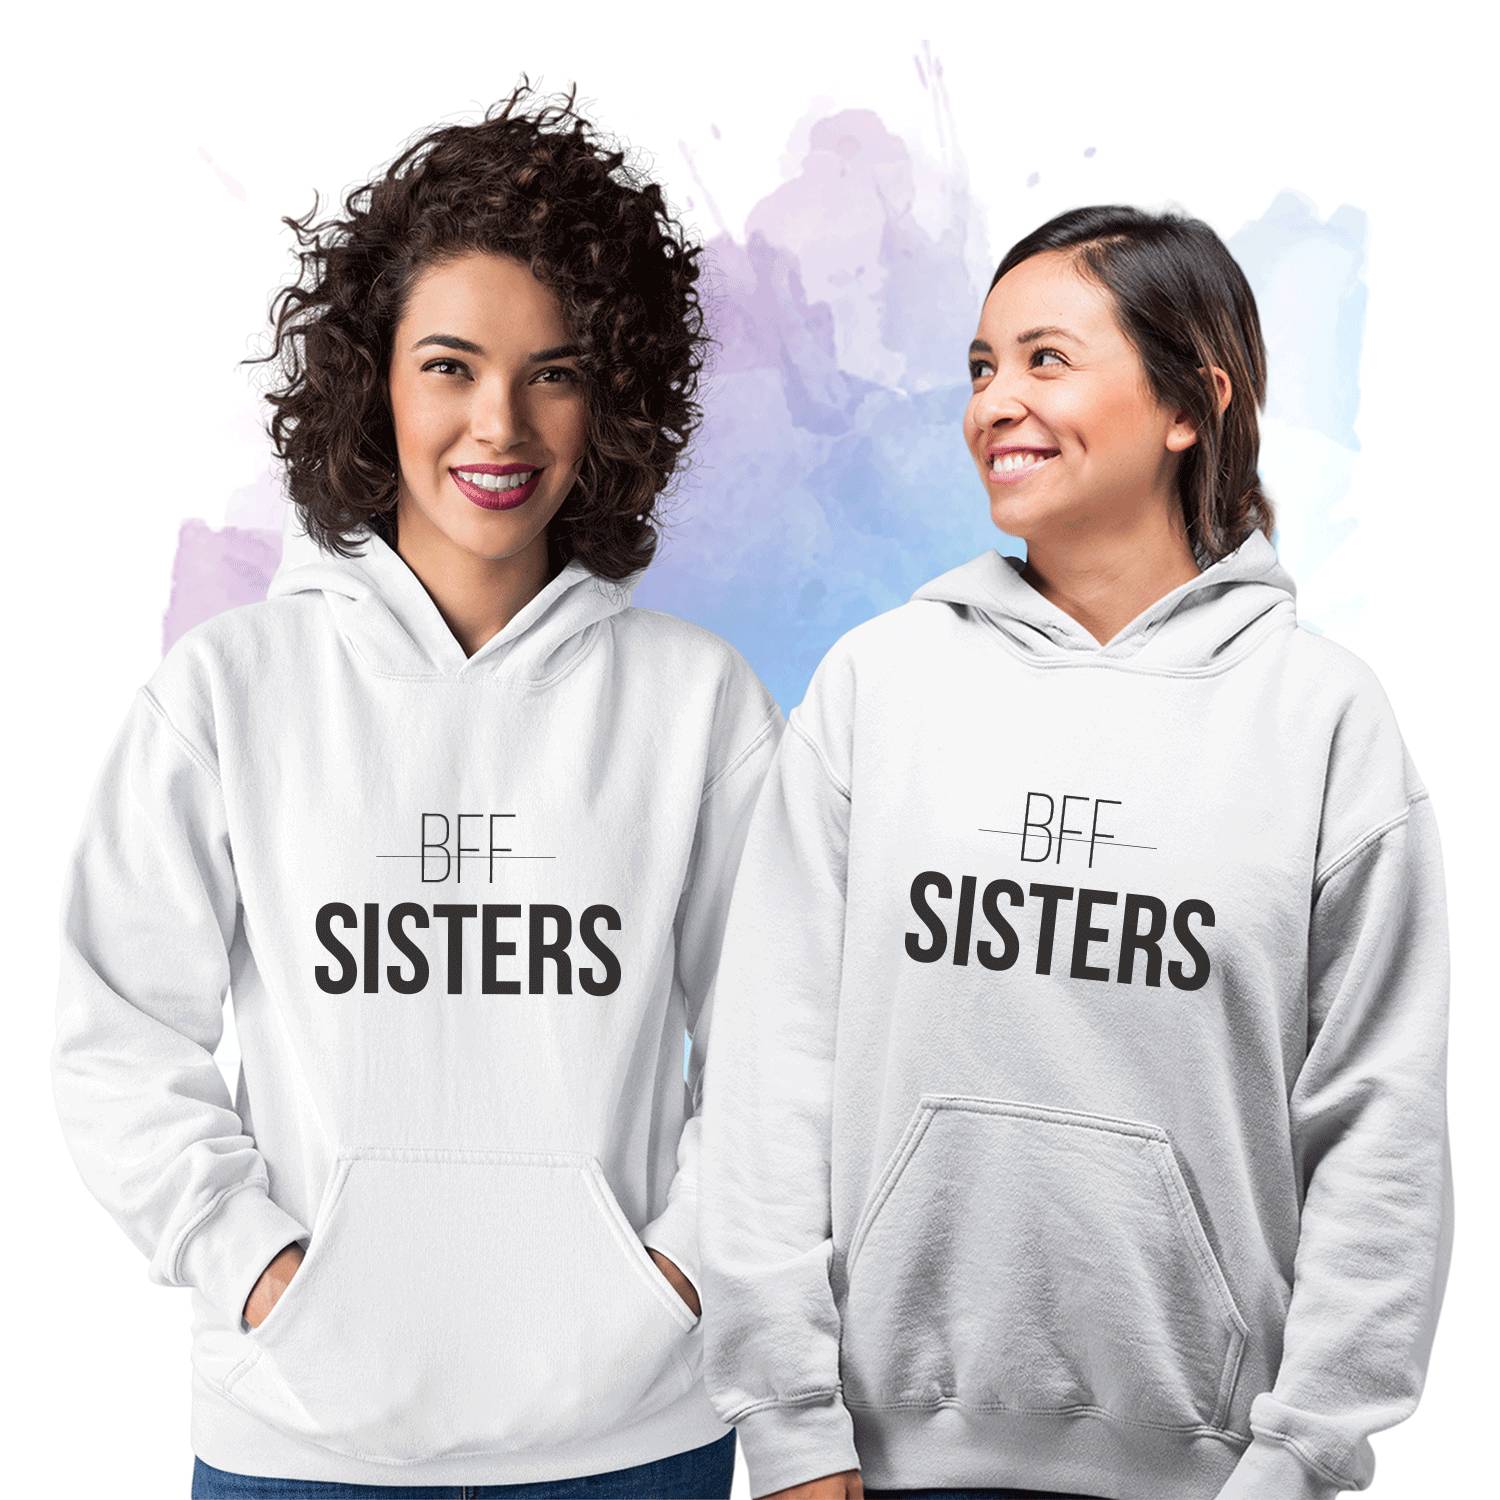 Fb Sister Одежда Для Женщин Интернет Магазин